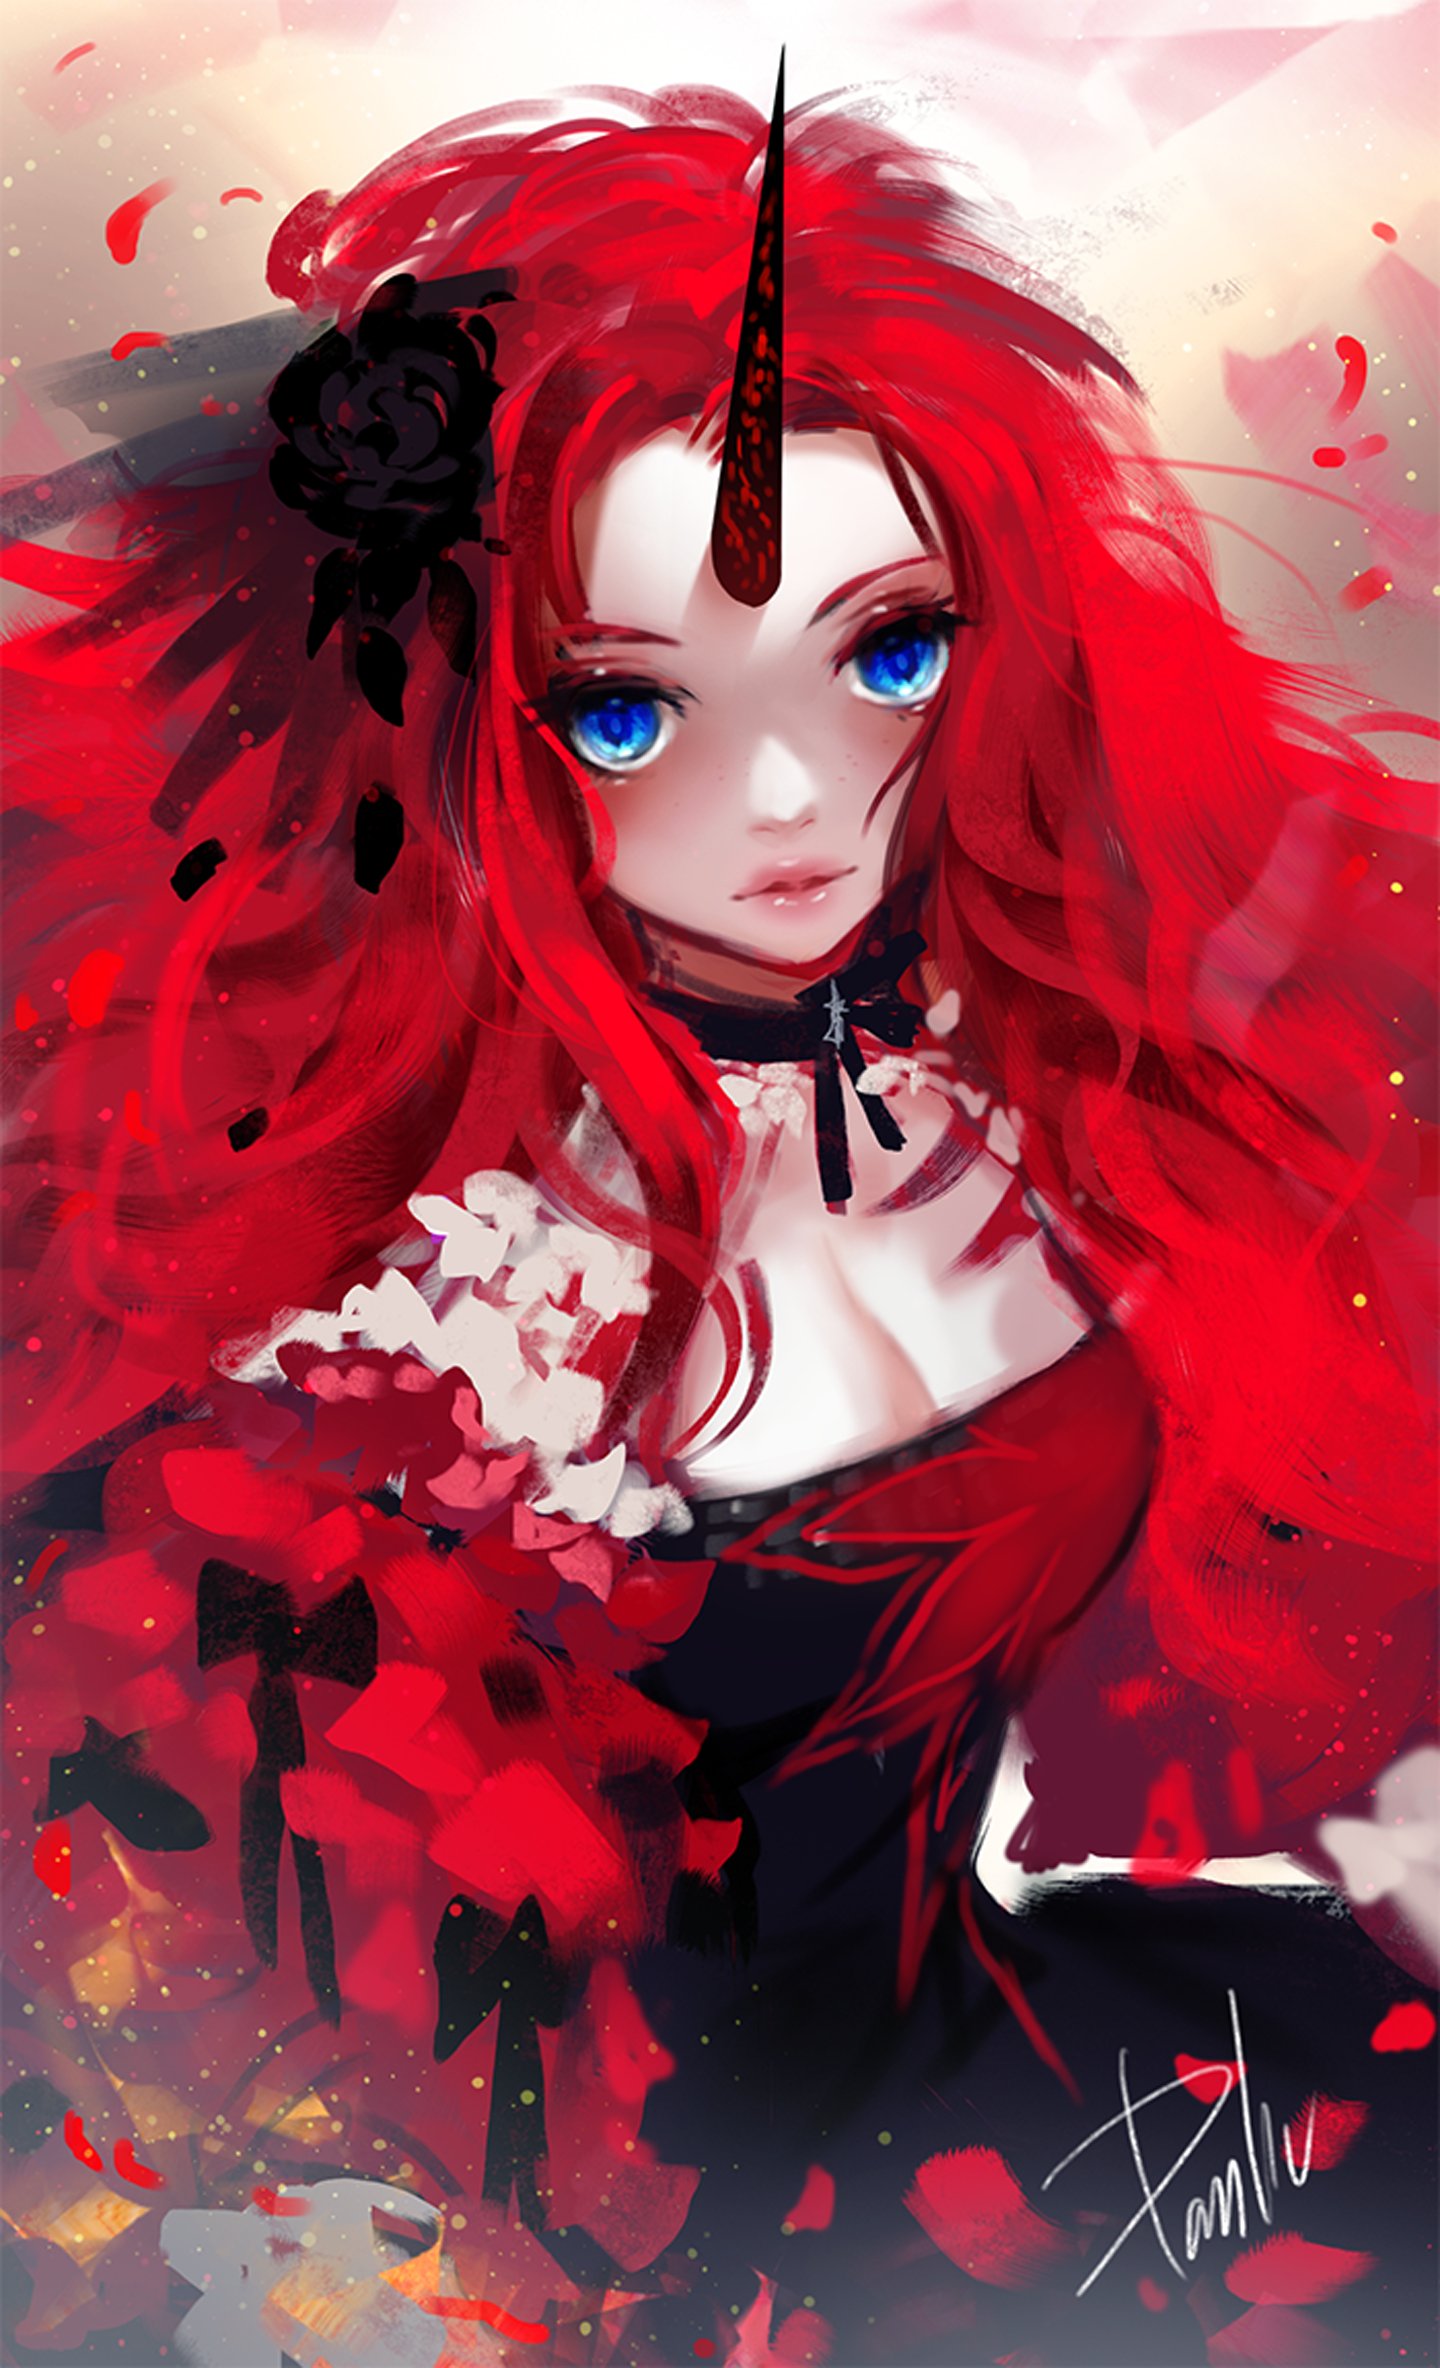 Red hair anime girl blue eyes wallpaper x